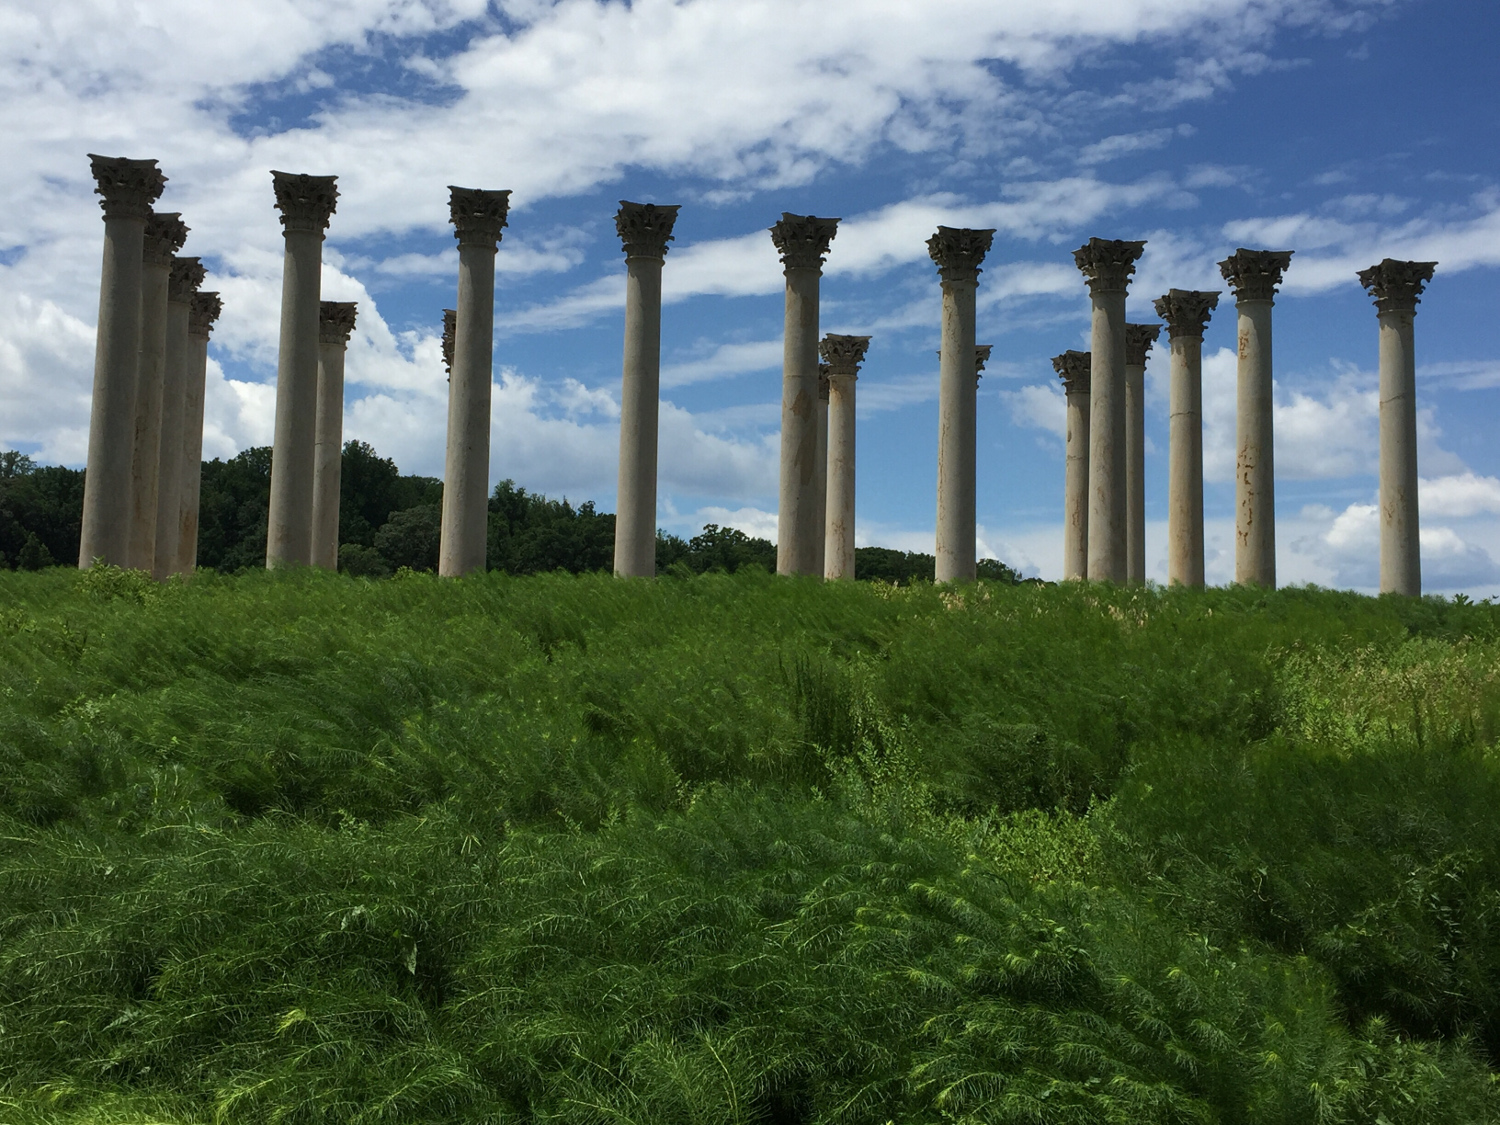 Columns at the National Arboretum